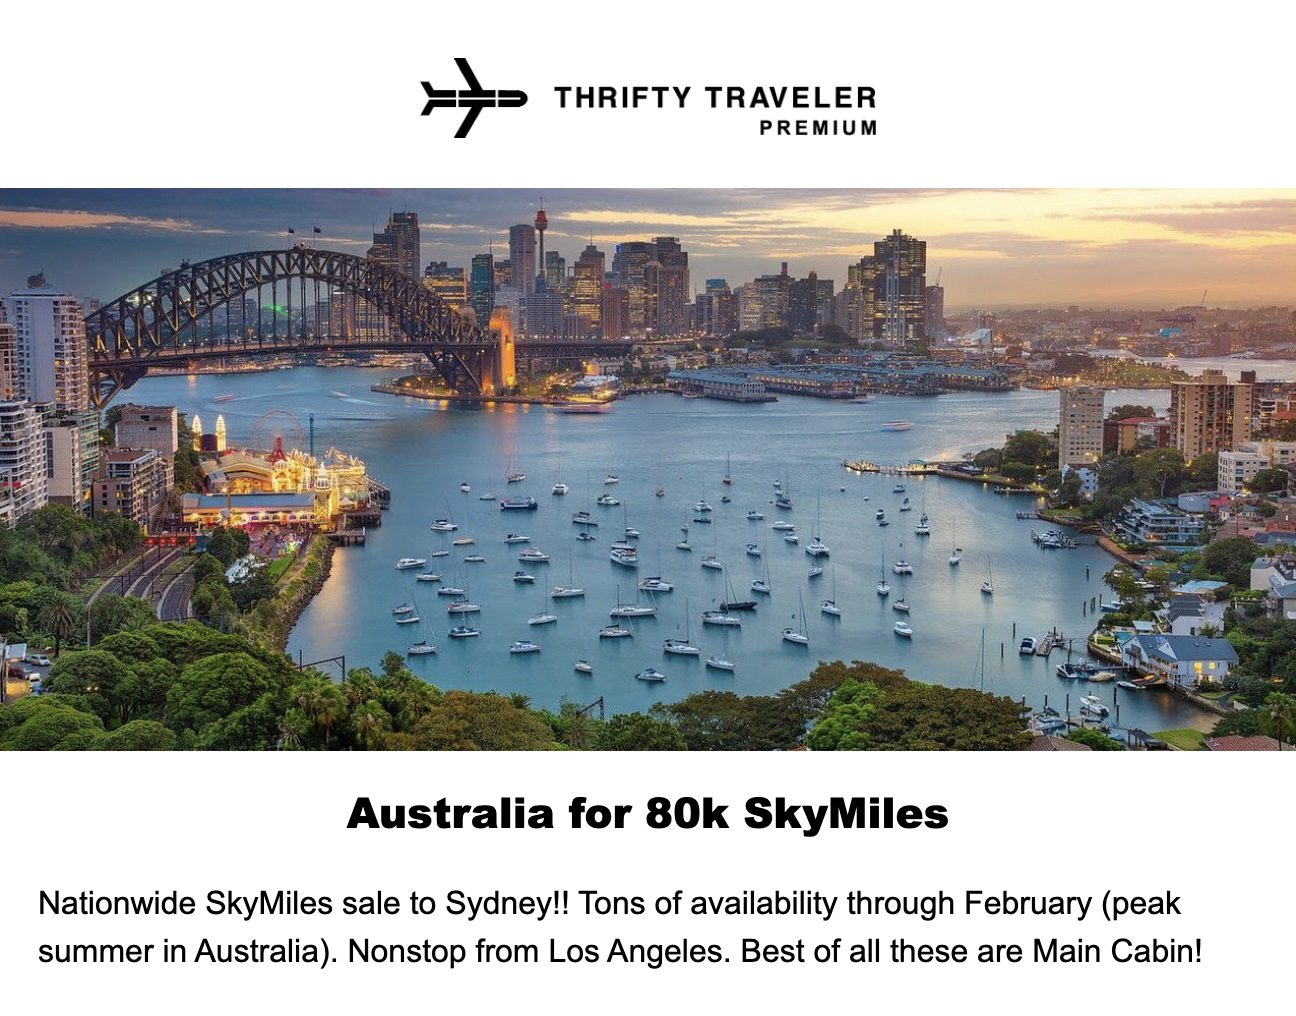 Delta SkyMiles to Australia